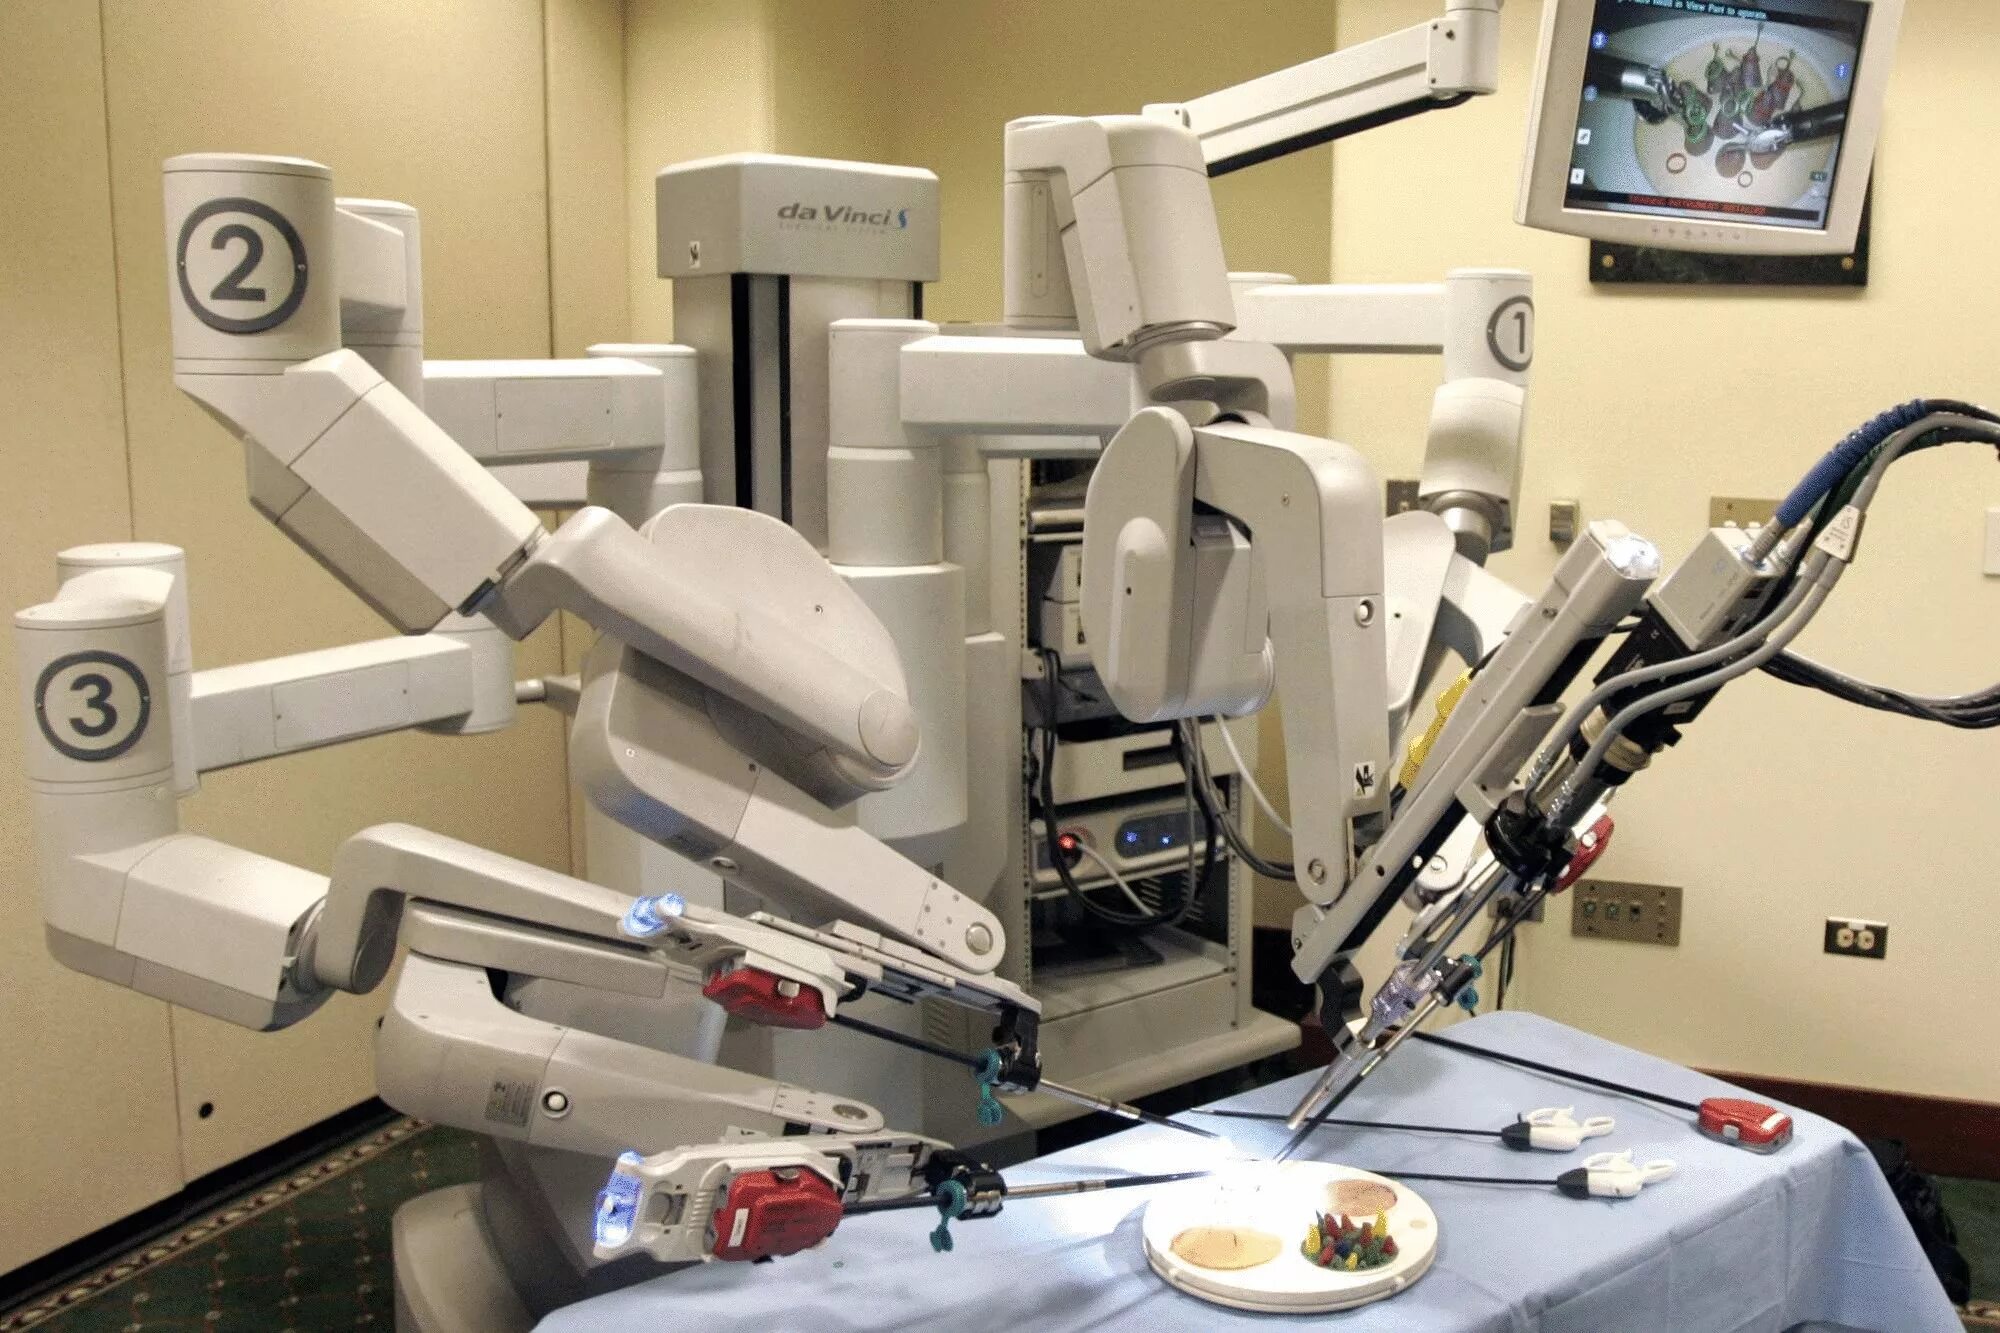 Робот делает операцию. Робот-хирург da Vinci (да Винчи). Da Vinci операционный робот. Робот робот-хирург DAVINCI. Робот-ассистированная хирургическая система «da Vinci».